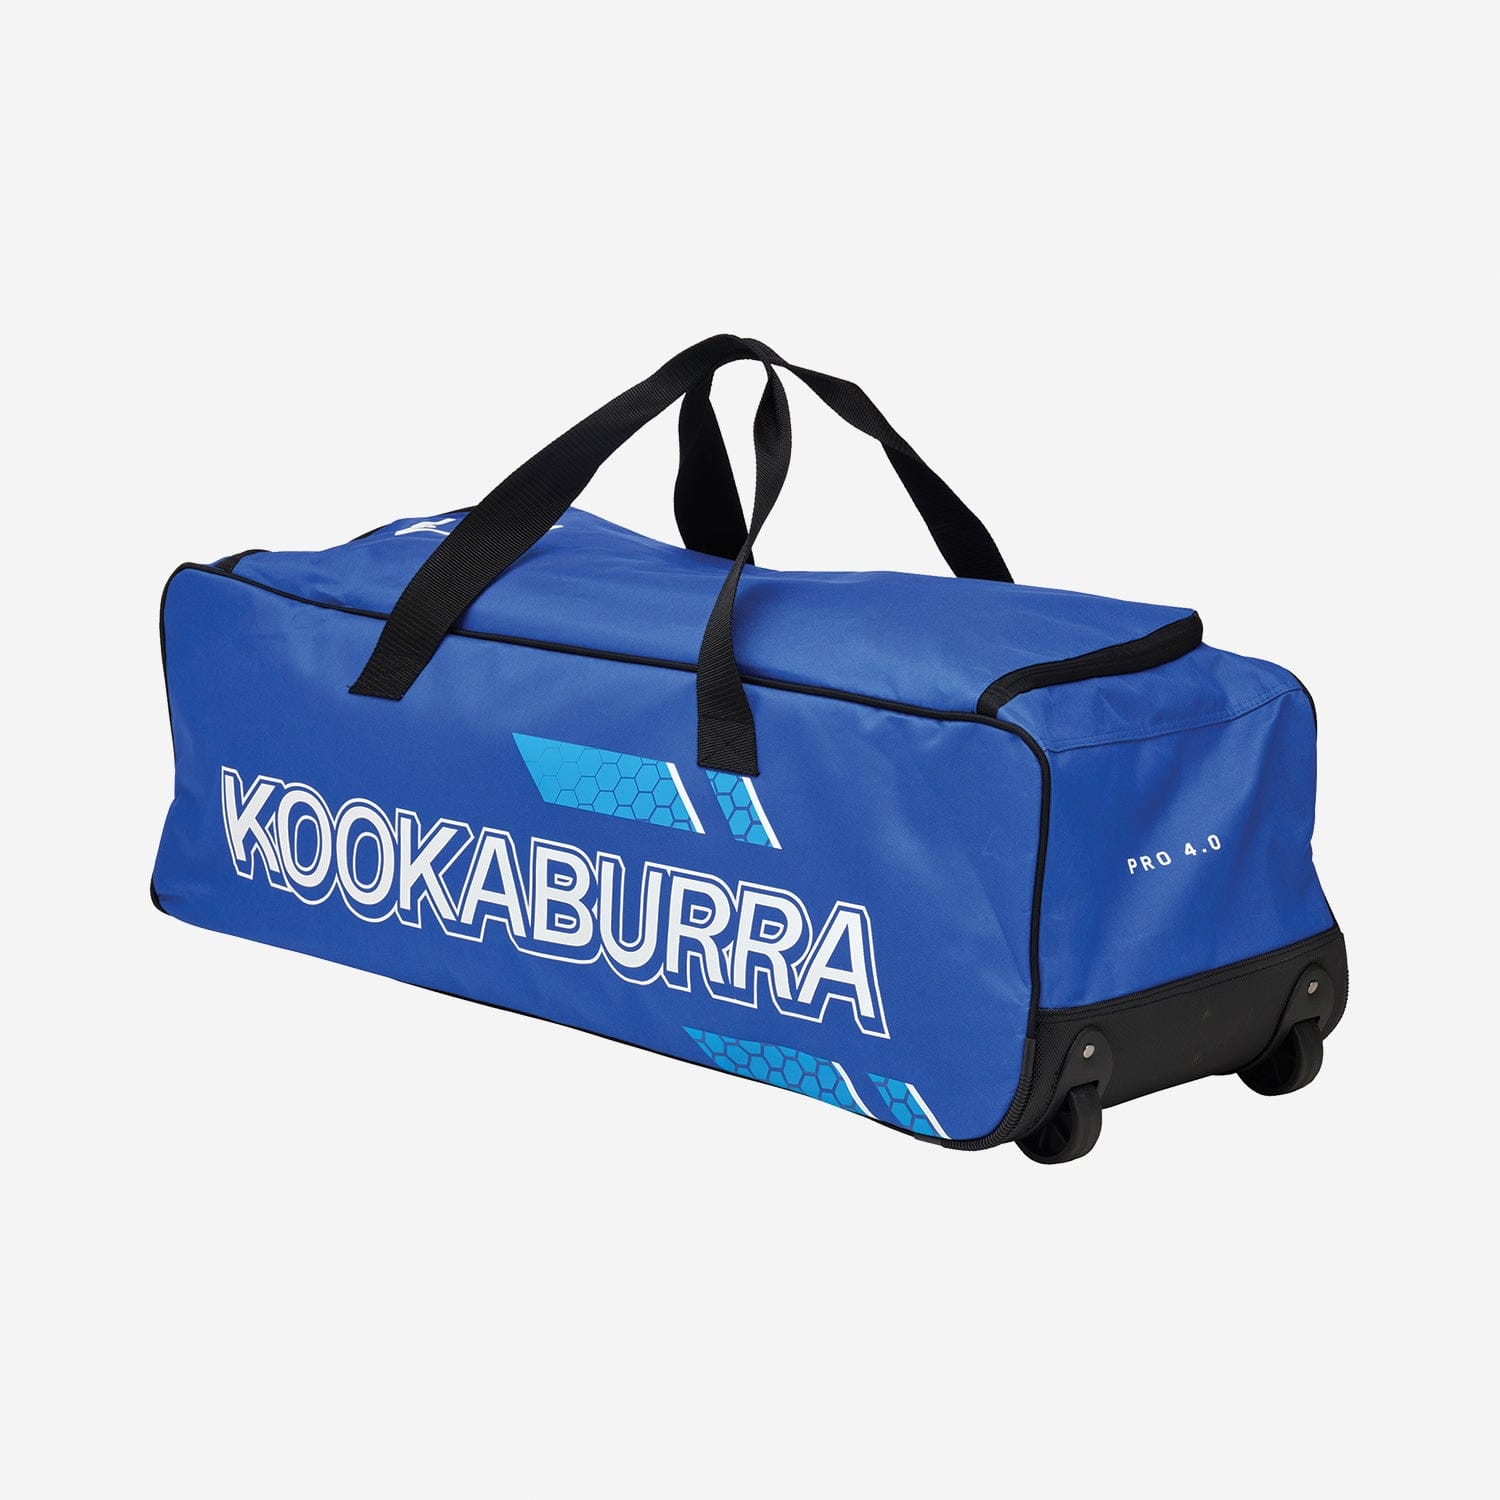 Kookaburra Cricket Bags Blue Kookaburra 4.0 Wheelie Cricket Bag